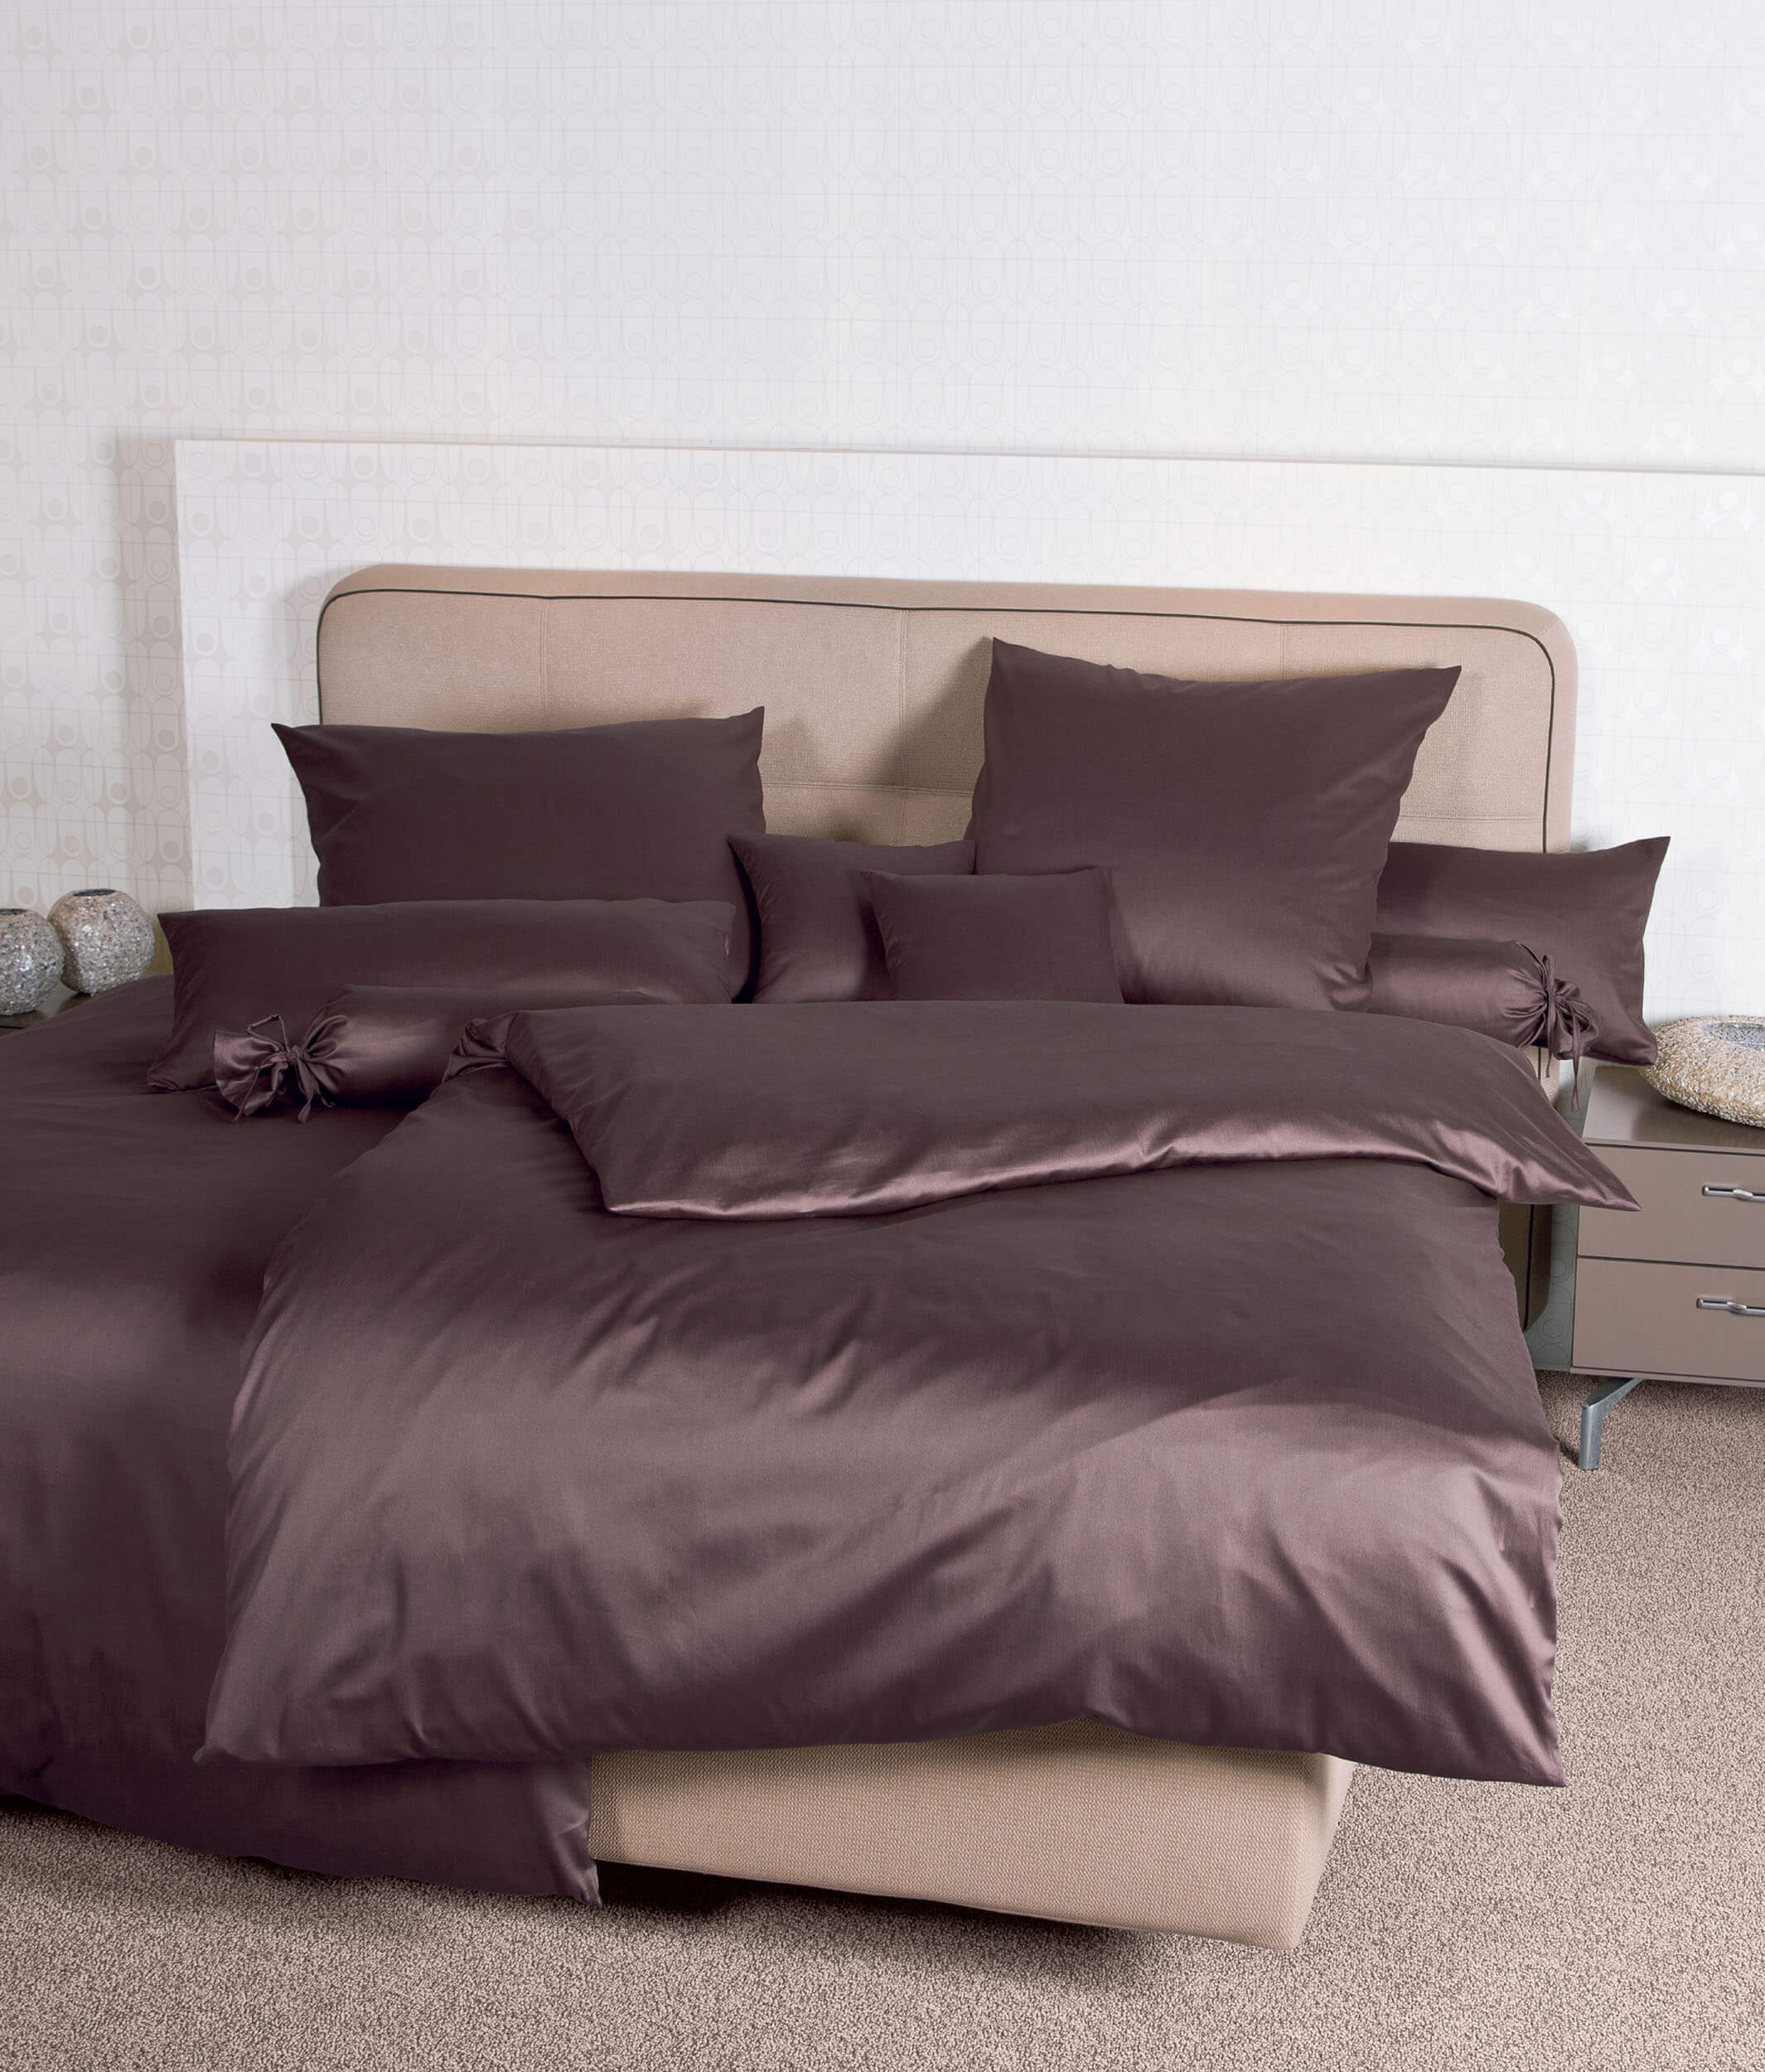 Коричневое постельное белье Colors Schoko ☞ Размер пододеяльника: 155 x 200 см ☞ Размер простыни: Без простыни ☞ Размер наволочек: 50 x 70 см (1 шт.)